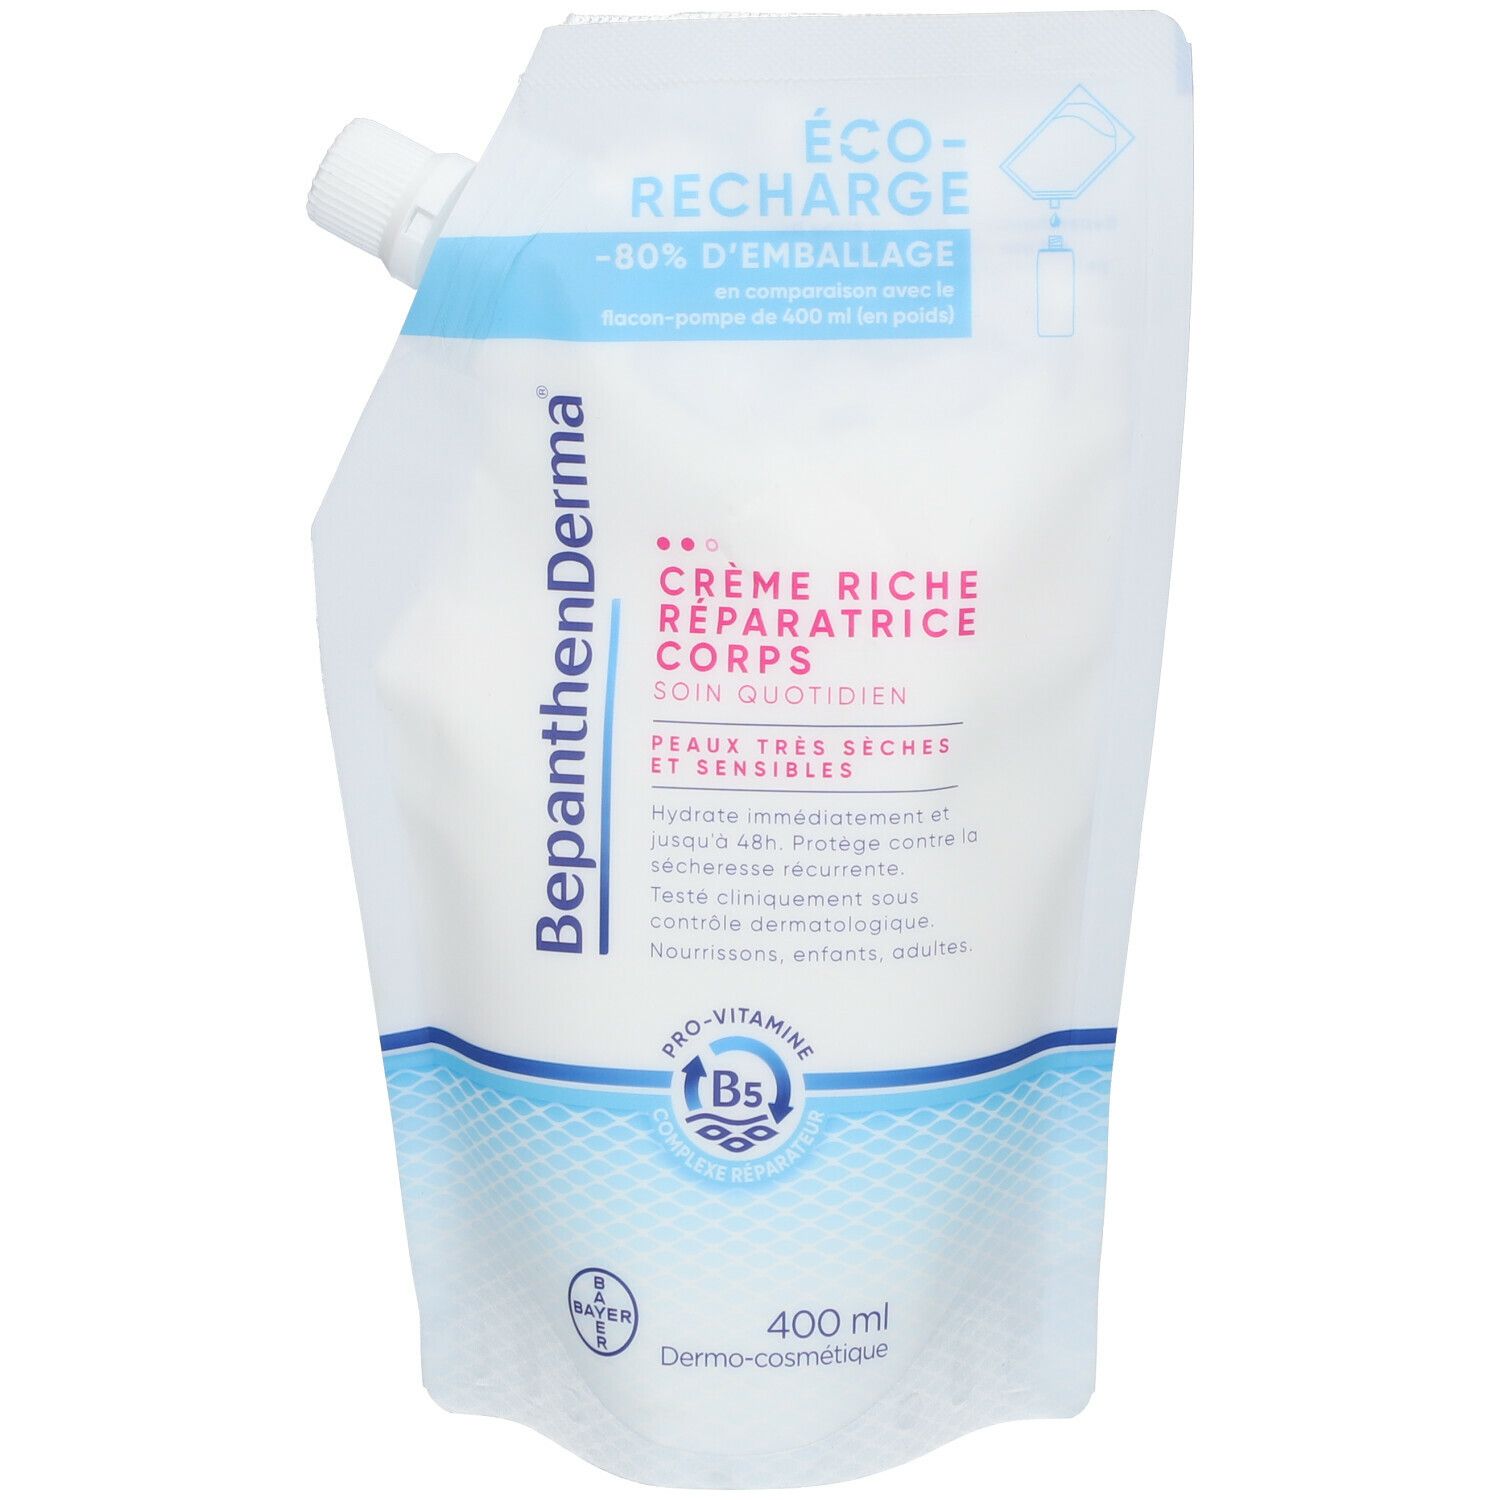 BepanthenDerma® Crème Riche Réparatrice Corps Éco-Recharge 400ml Peaux sèches et sensibles